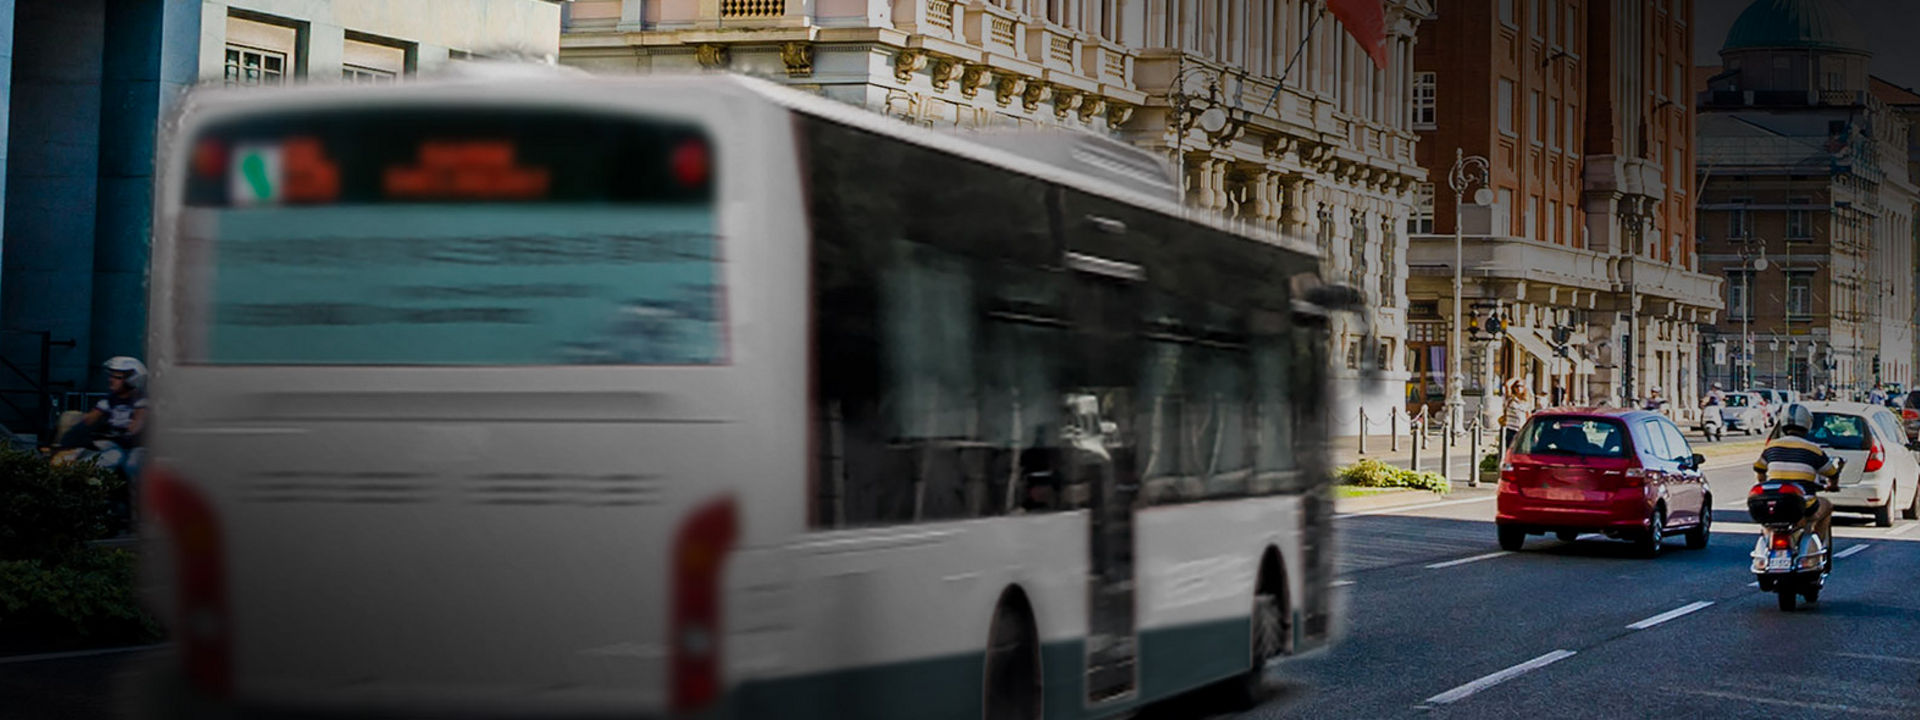 Bilde av bybuss med Bridgestone bussdekk, som kjører i sentrum.